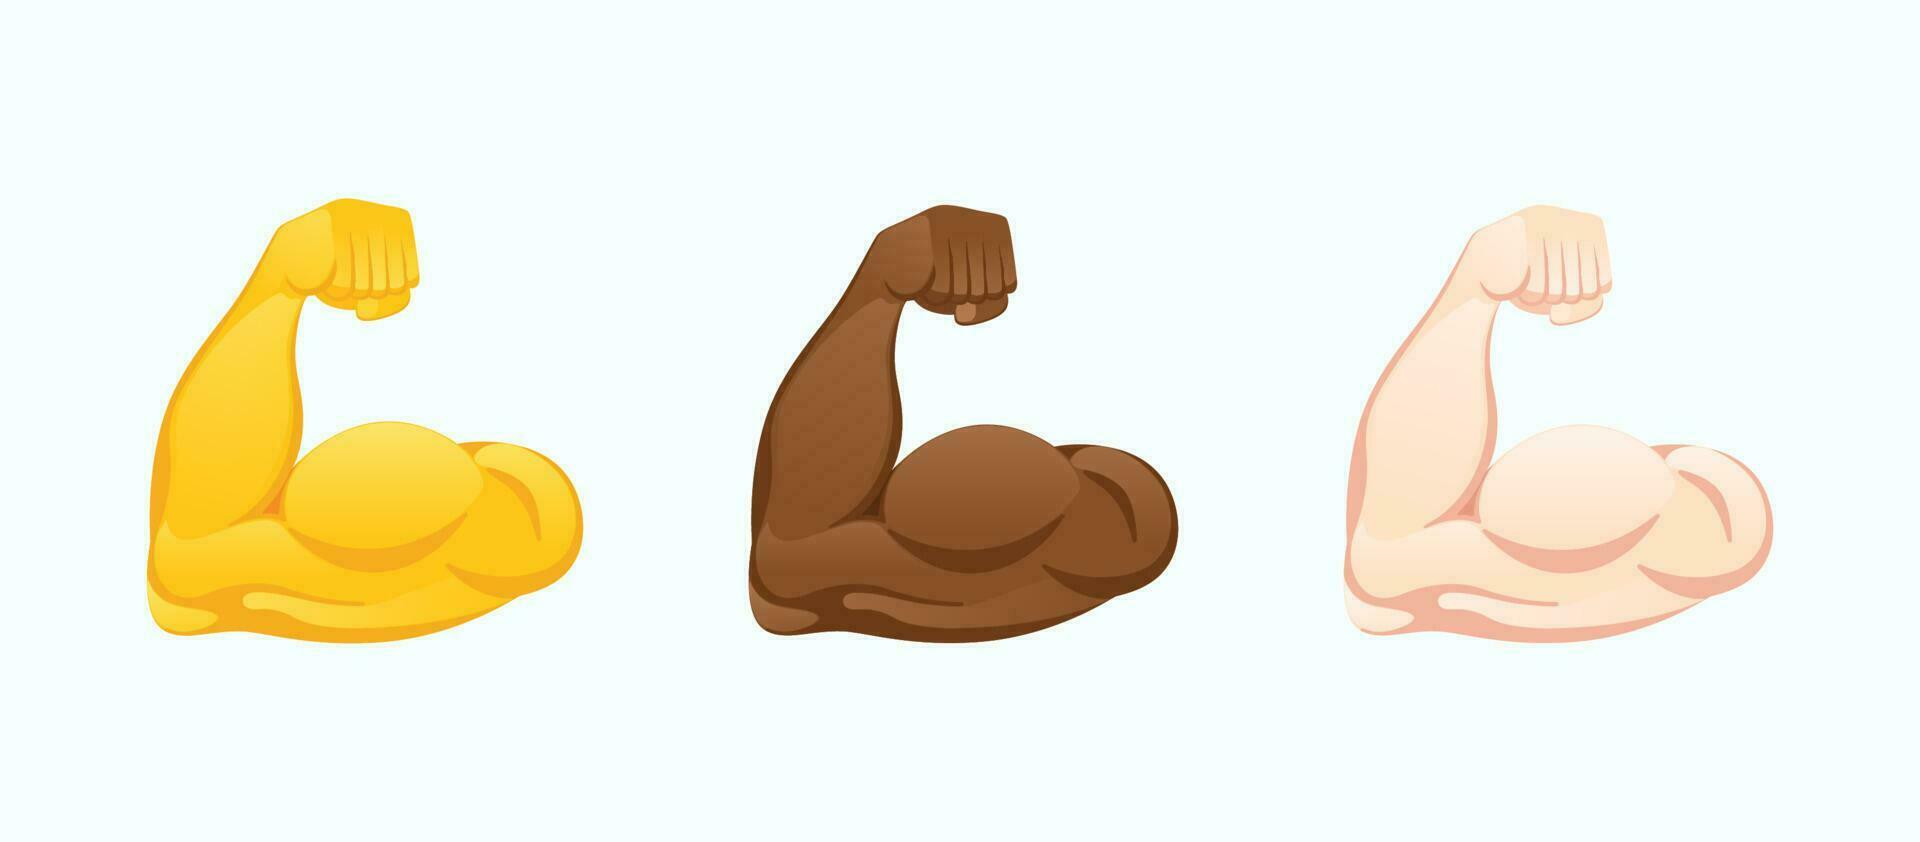 böjd biceps ikoner. stark muskel händer av olika hud toner gest emoji vektor illustration.